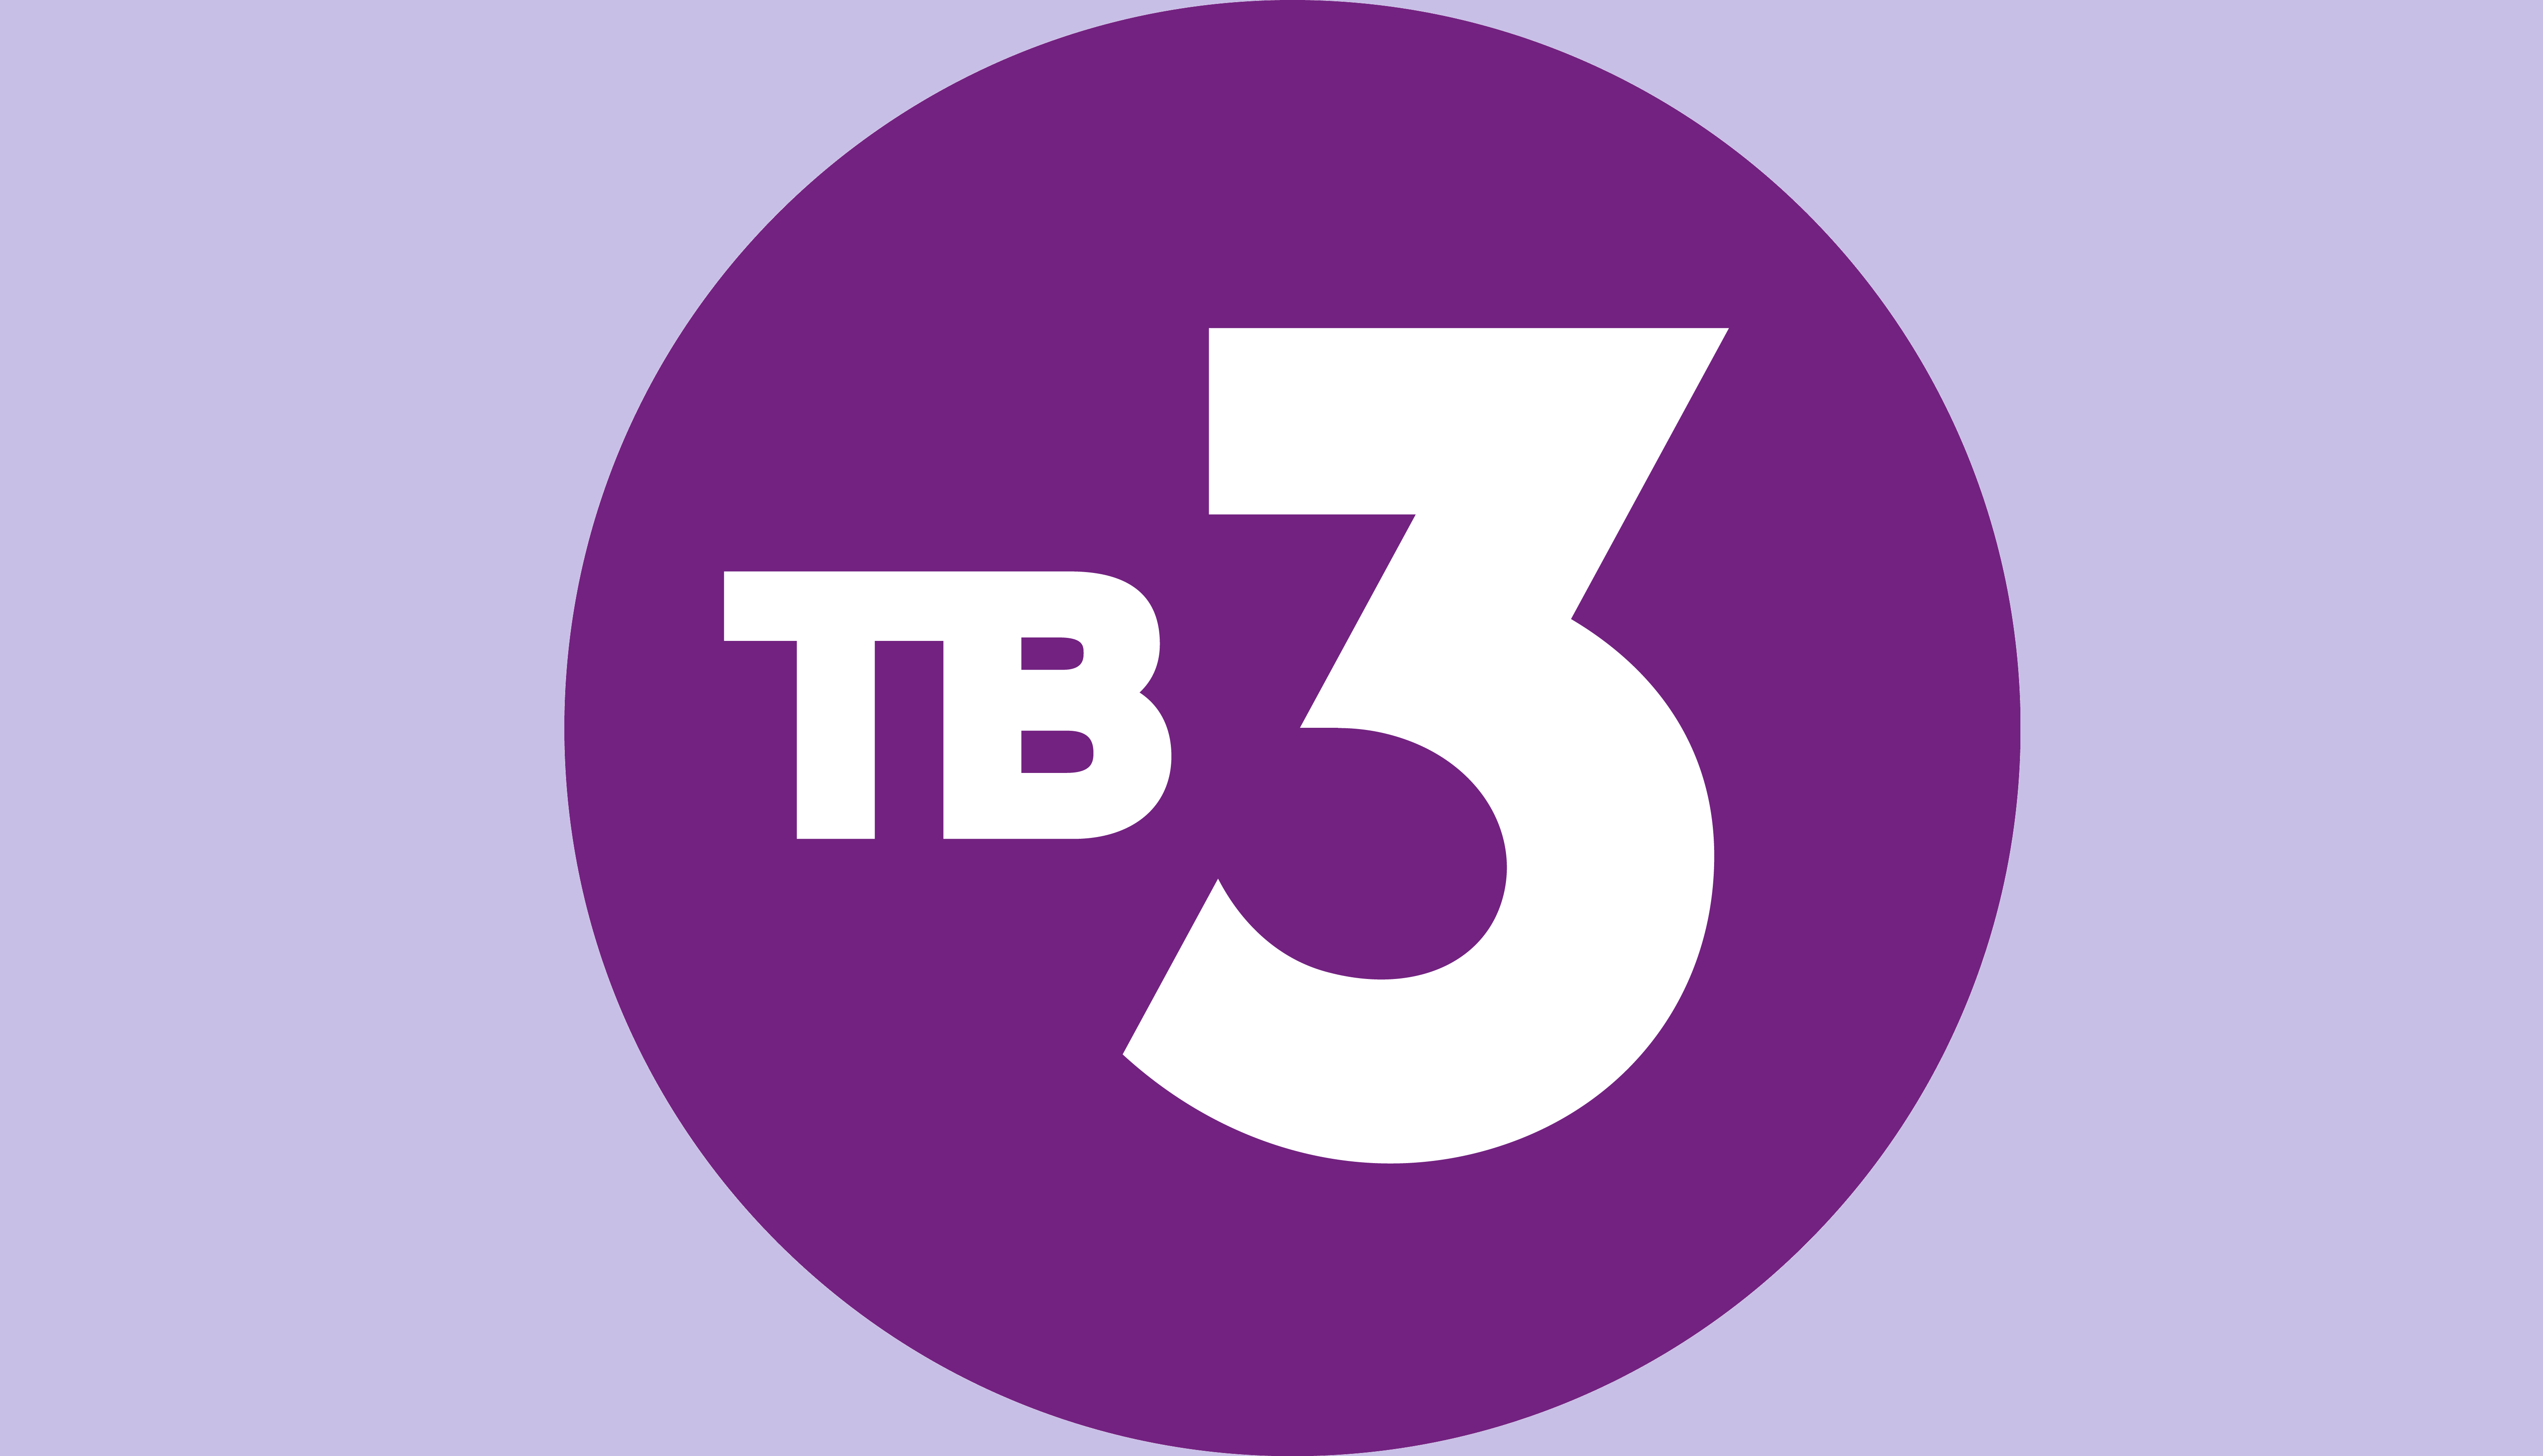 Прямая трансляция 3 канал. Тв3 логотип. ТВ 3 эмблема. Телеканал тв3. Логотип канала тв3.